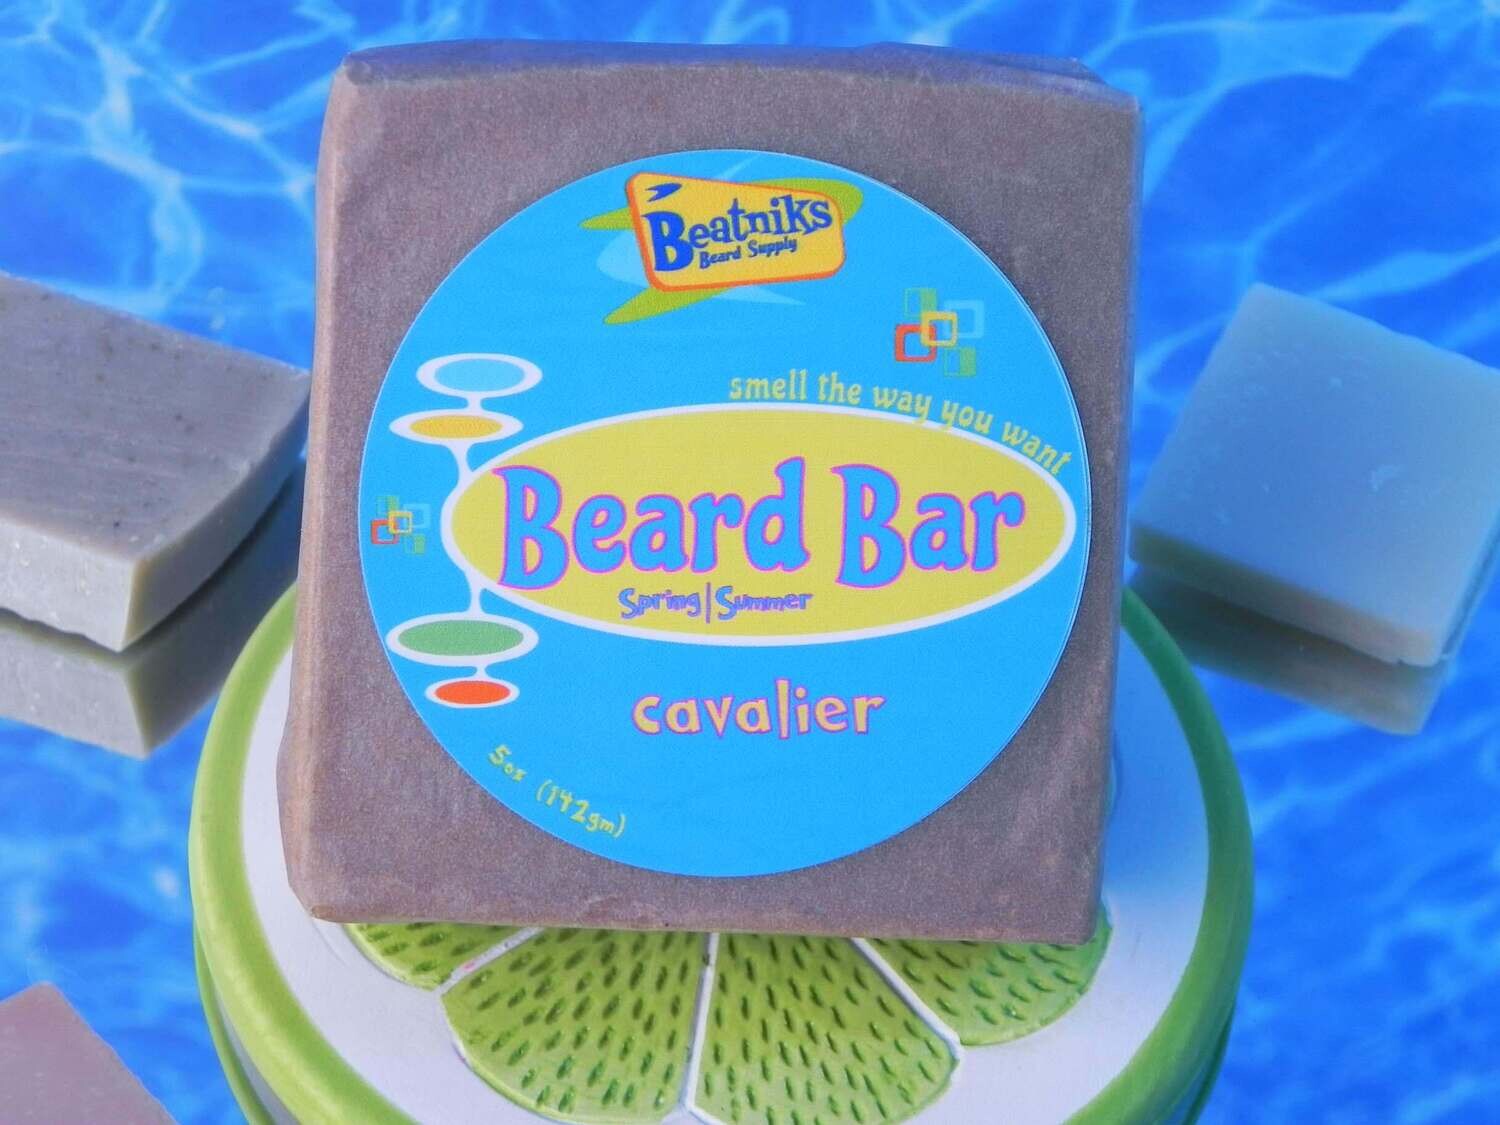 CAVALIER | Beard Bar